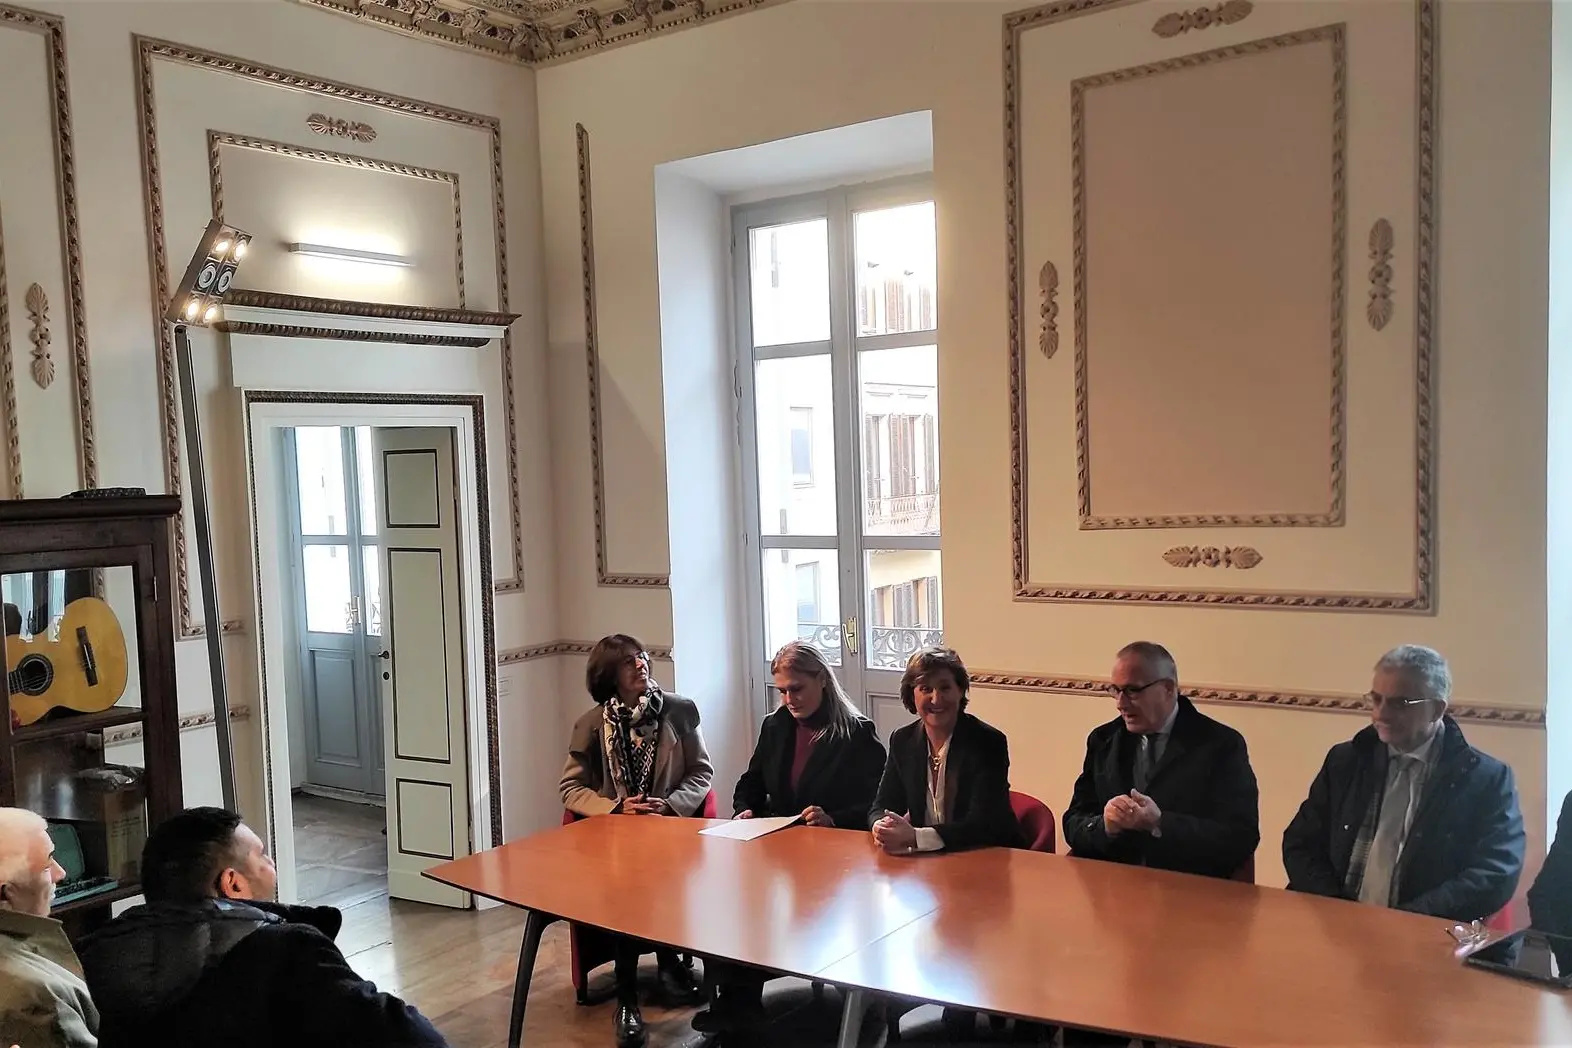 La presentazione della Scuola civica di musica di Sassari (foto G. Marras)